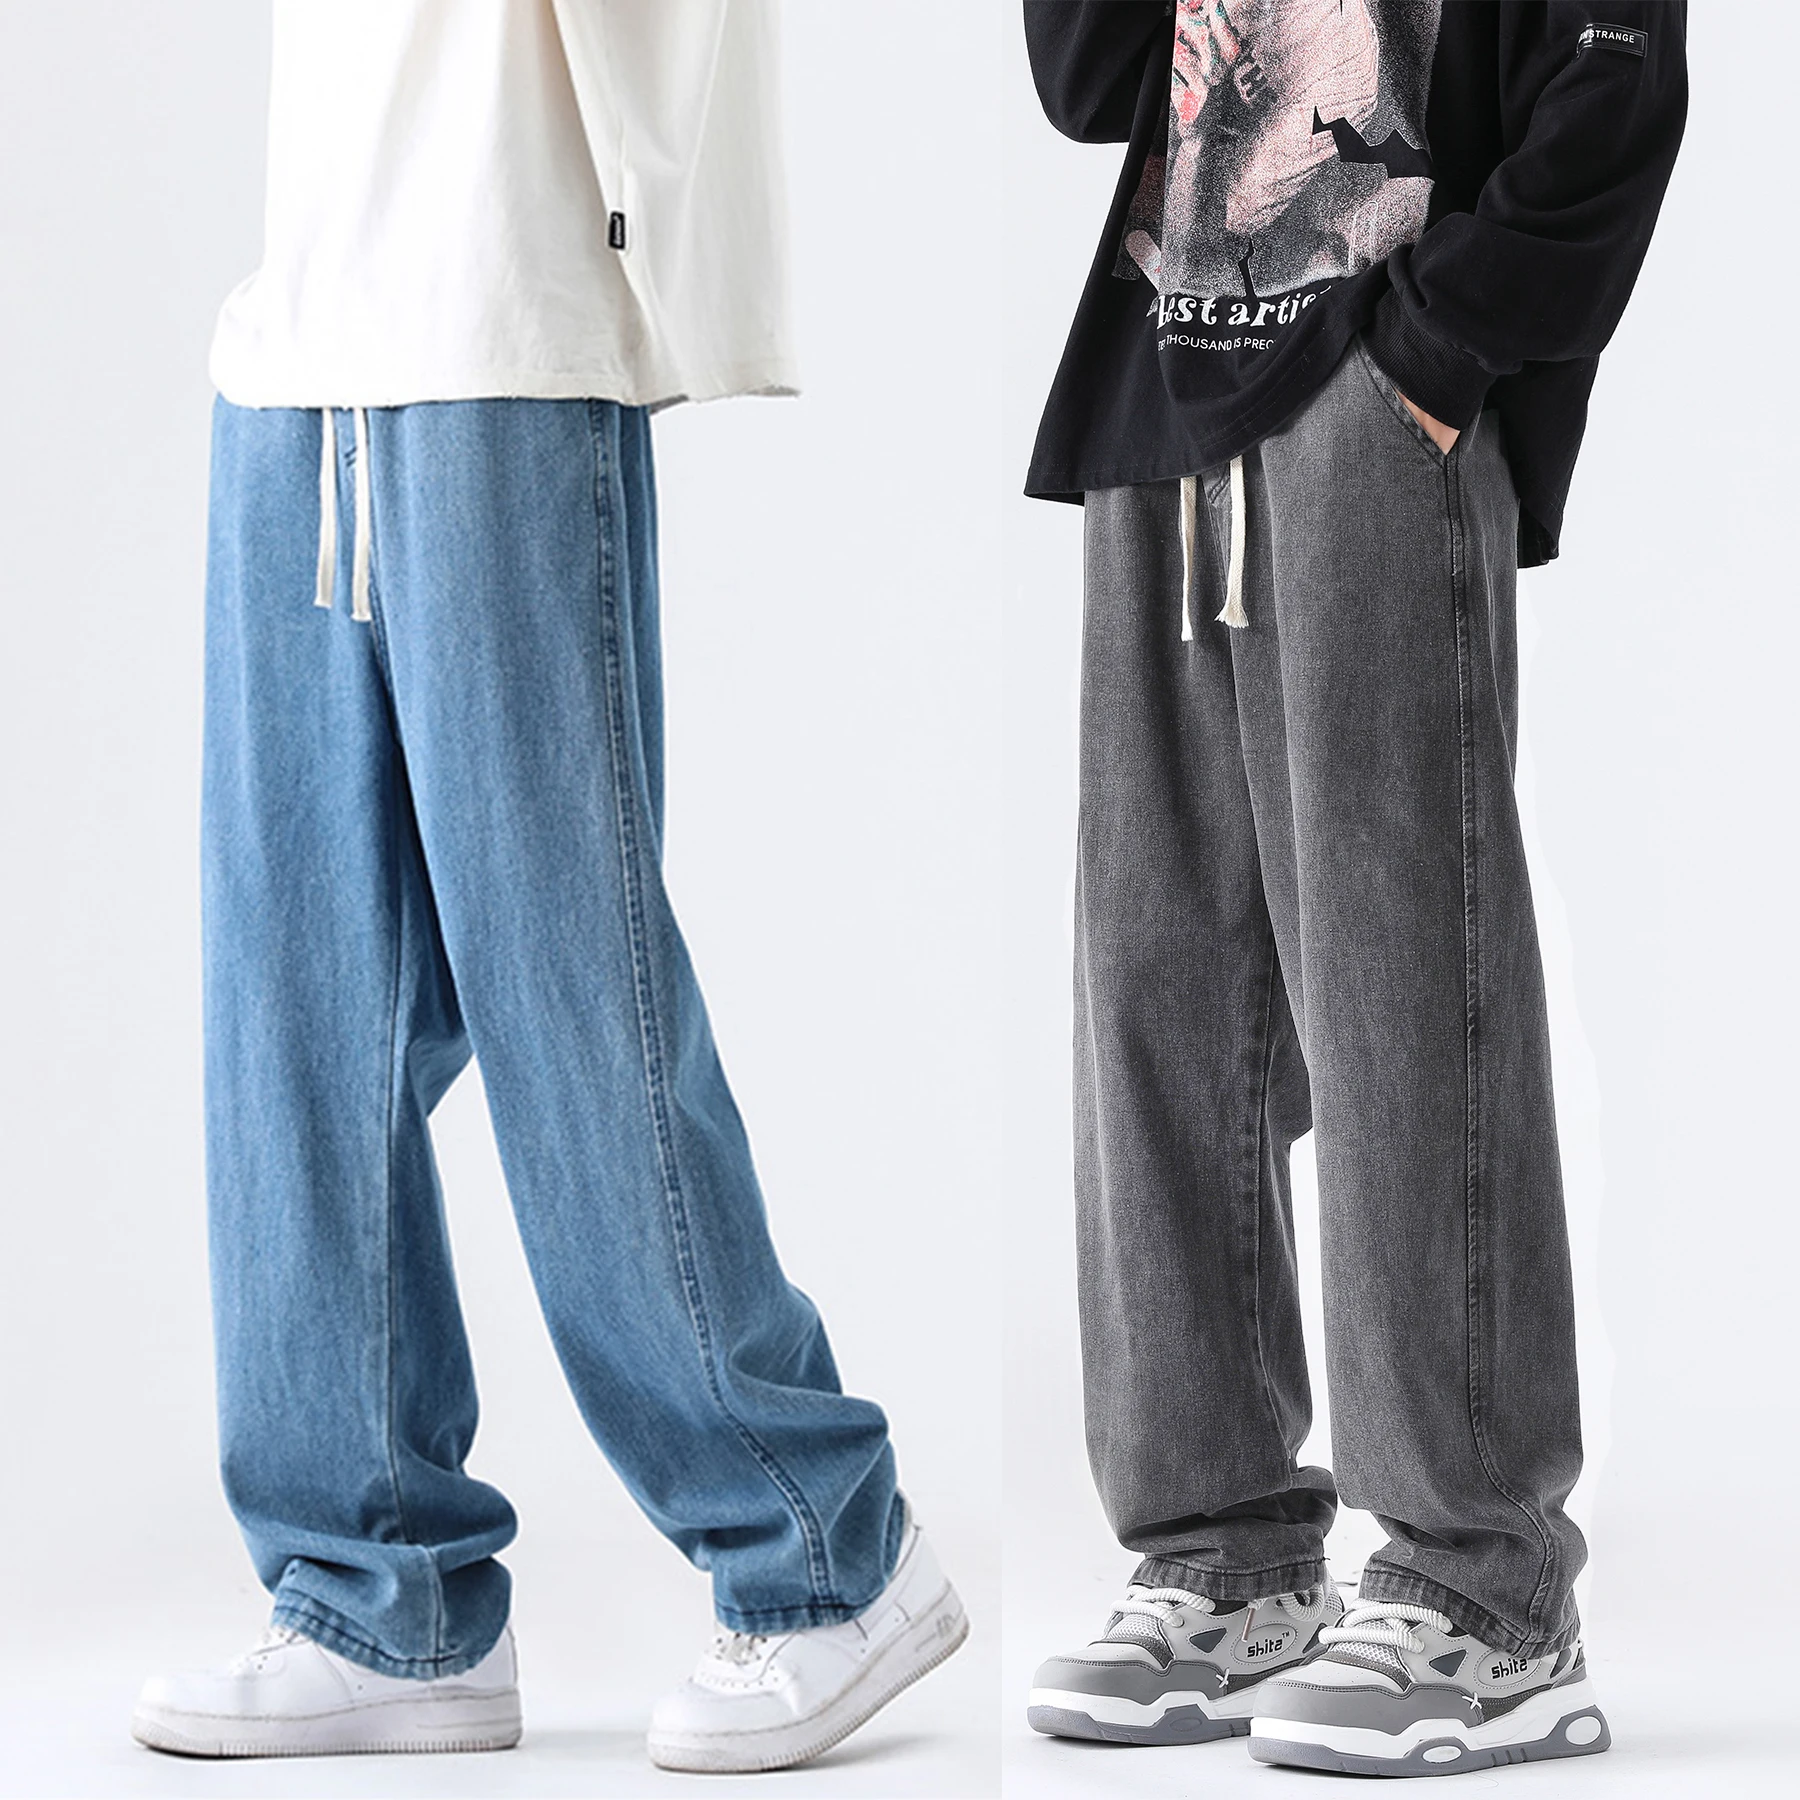 Подростковые джинсы M-5XL Выглядят узкими и свободными, повседневные и универсальные спортивные брюки, модные джинсы с прямыми штанинами